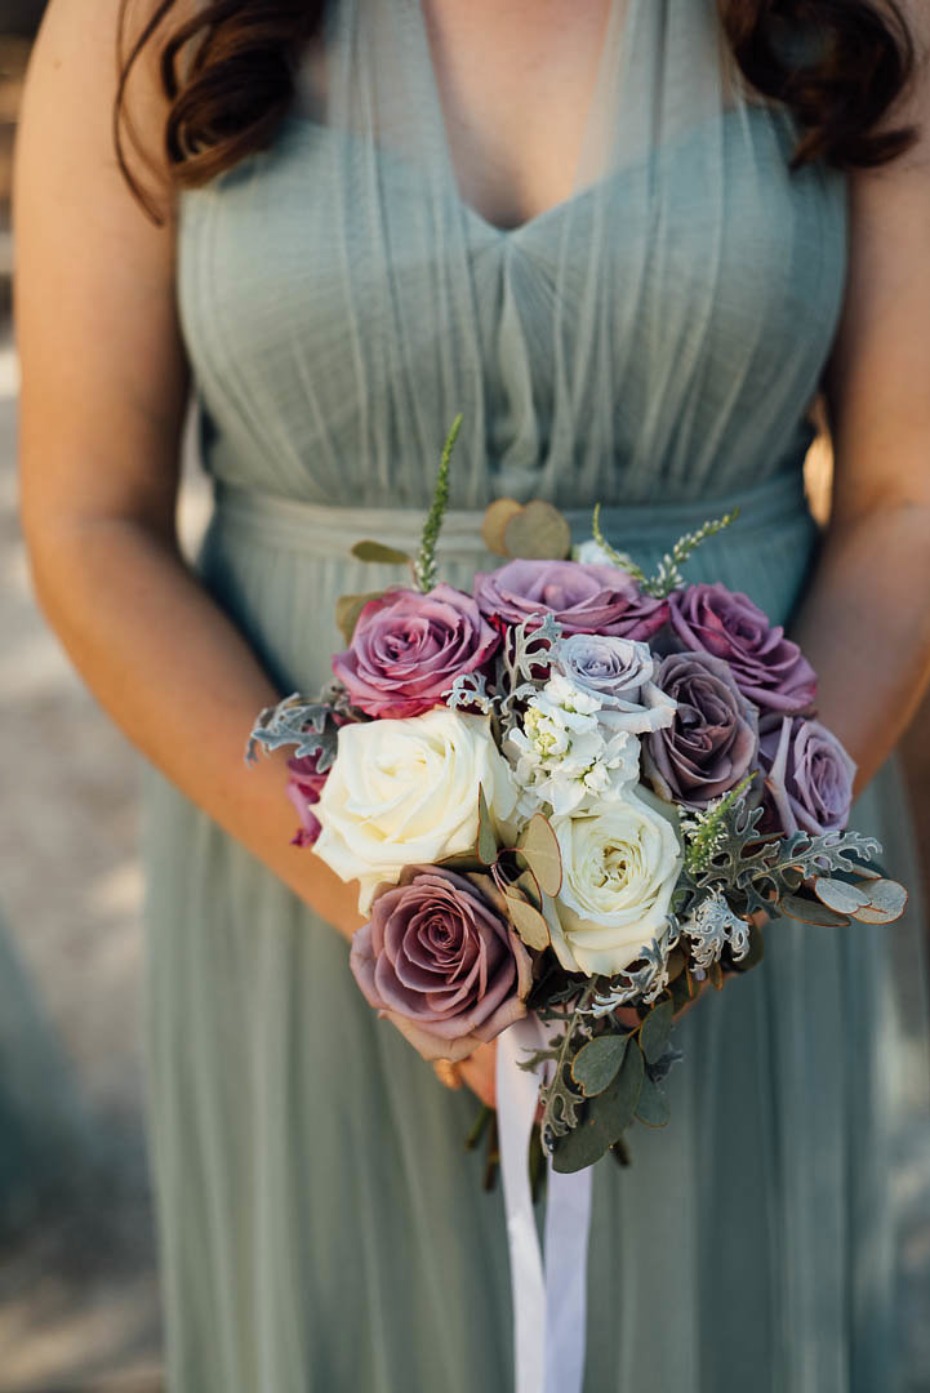 Gorgeous bridesmaid bouquet